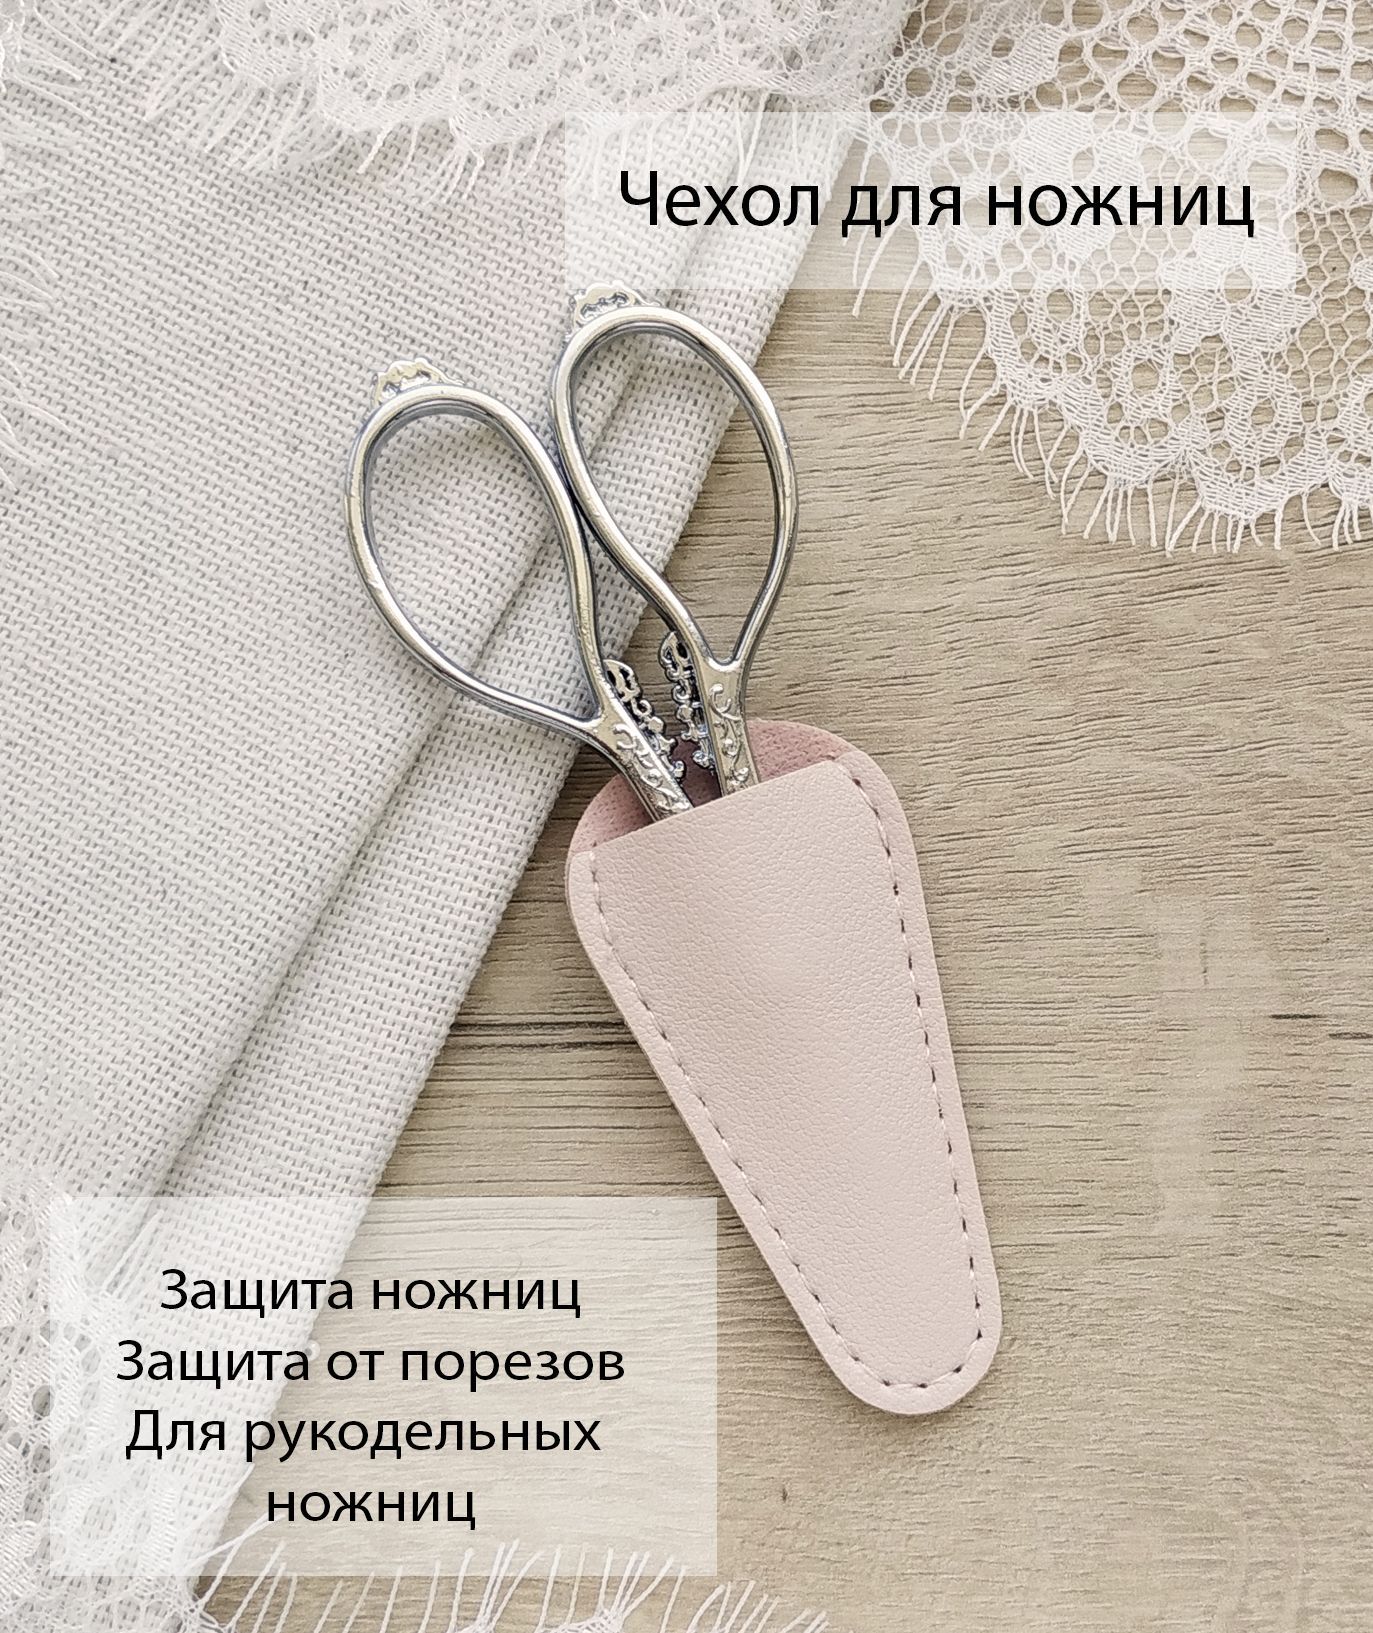 Чехлы для ножниц SWAY | Цена на Чехлы для ножниц, доставка по Украине.